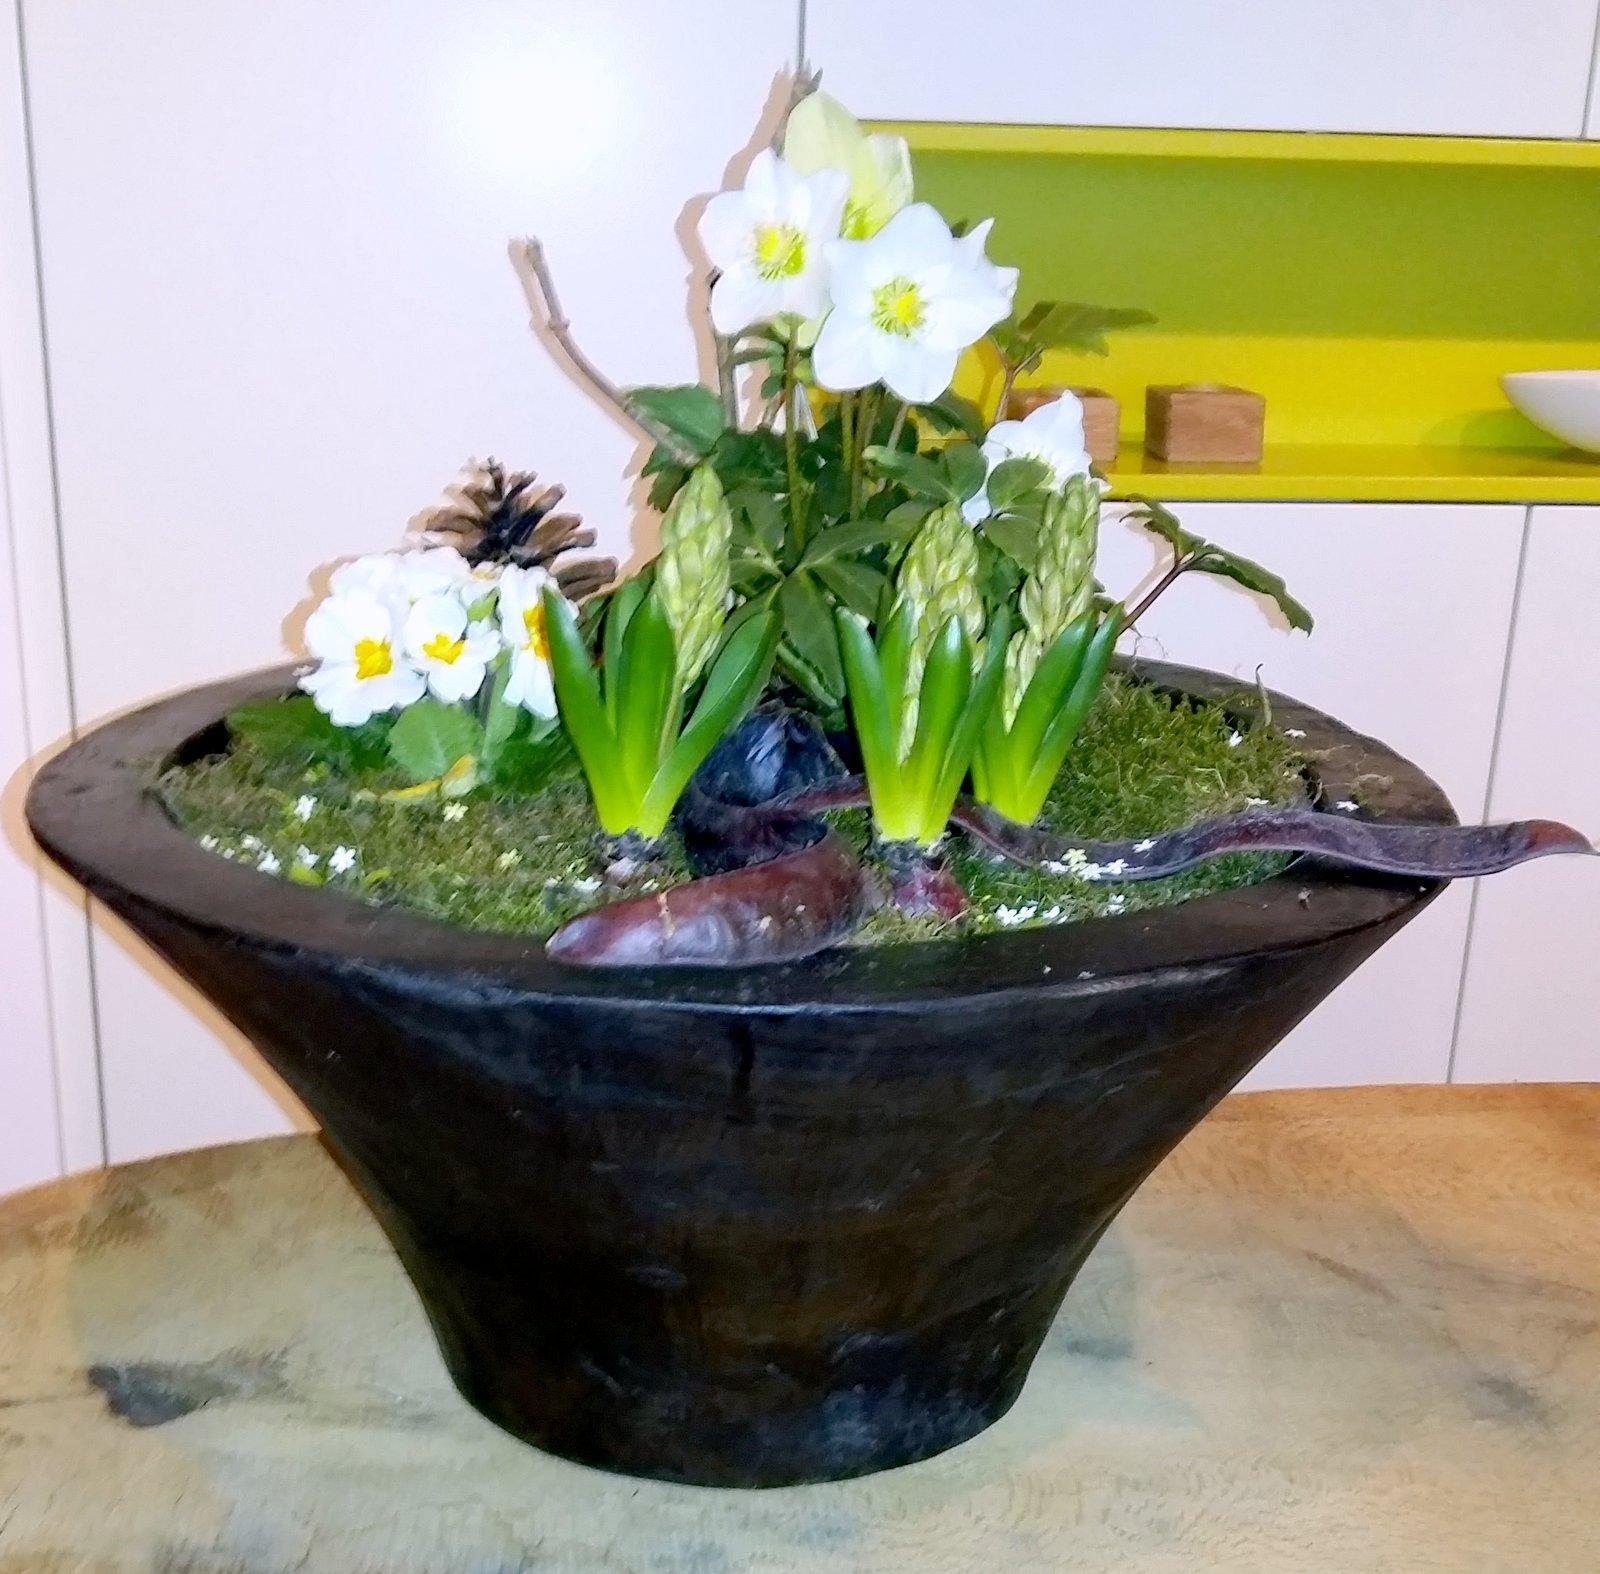 dekorative #Holzschale 
zum bepflanzen mit #Blumen od. #Obstschale #Dekoschale